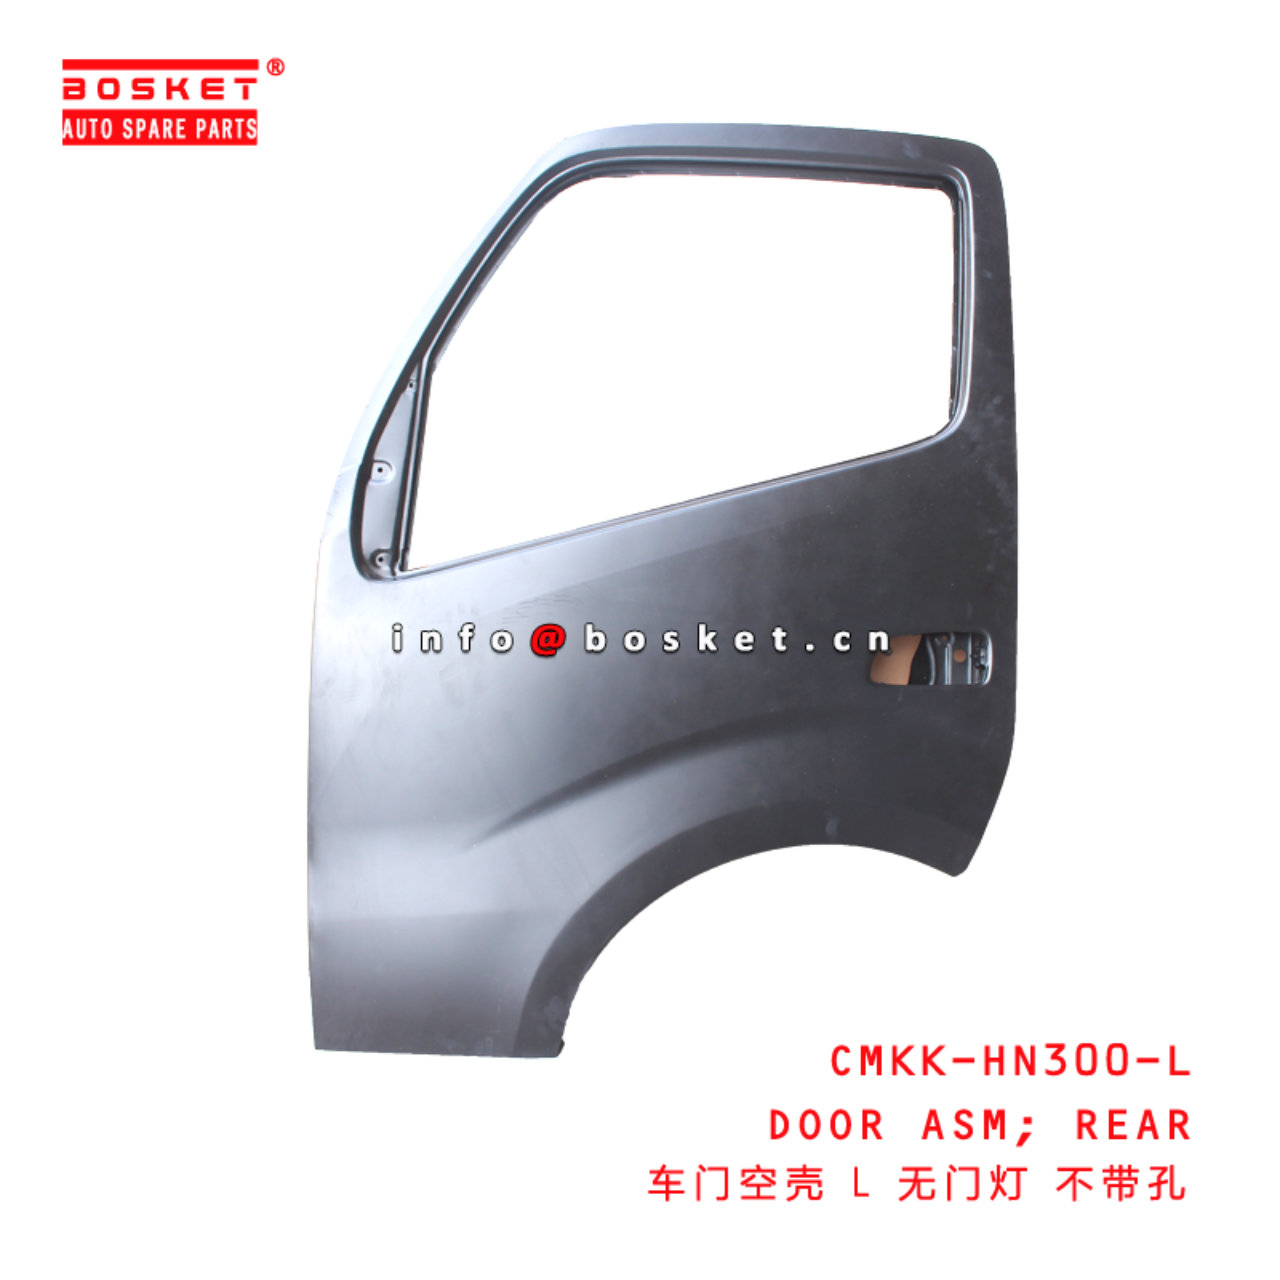 CMKK-HN300-L Rear Door Assembly Suitable for ISUZU HINO300